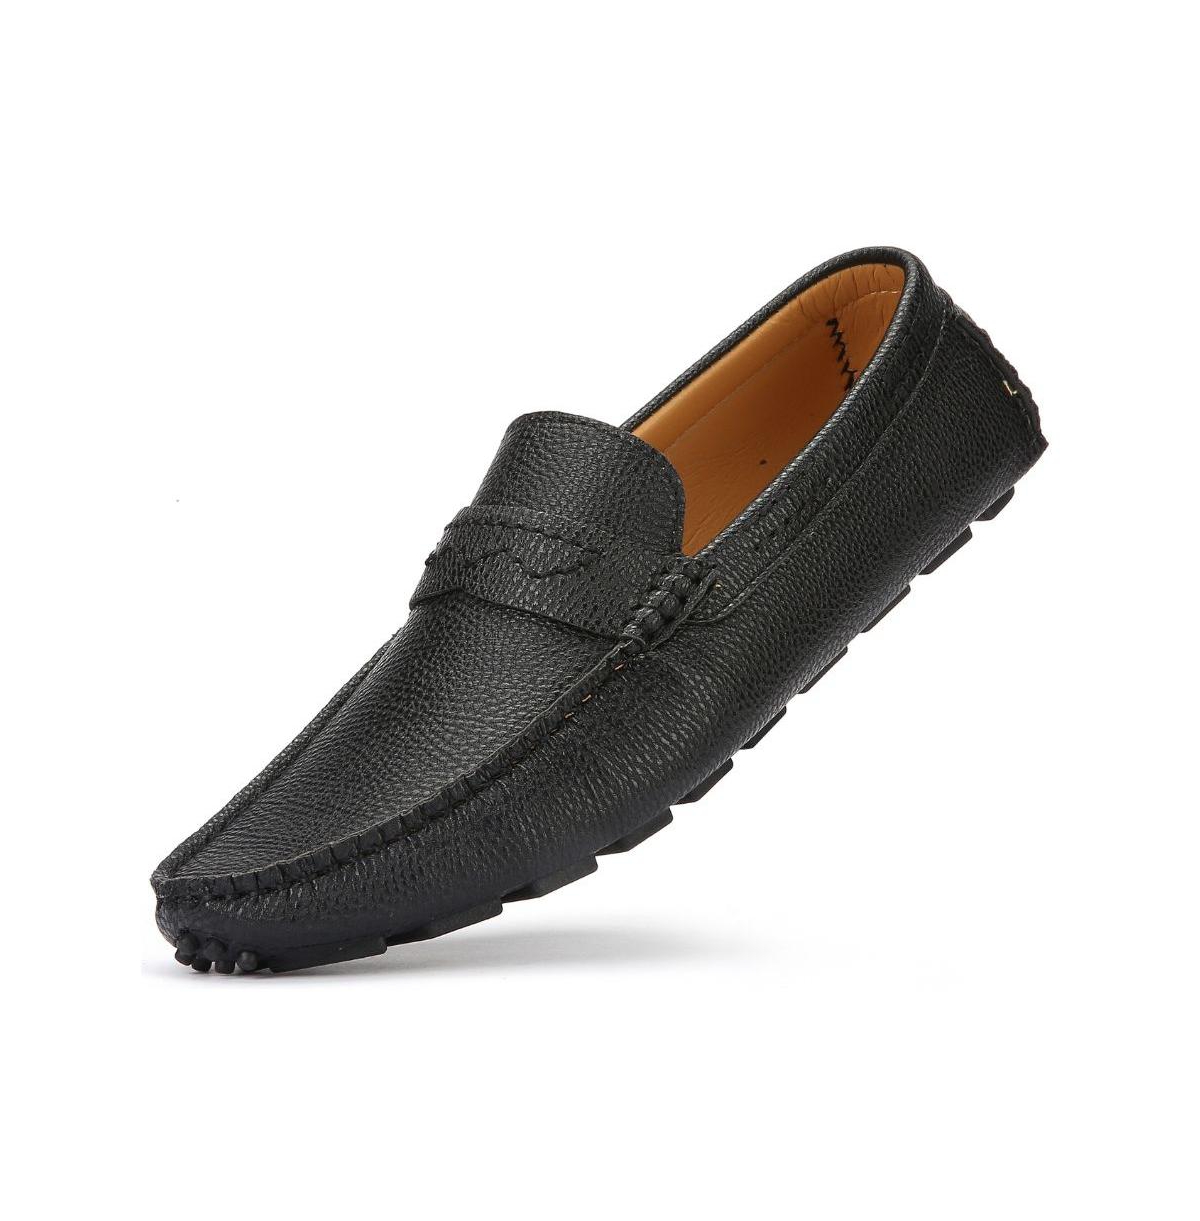 Men's Slip-On Tread Casual Loafers - Black obsidian